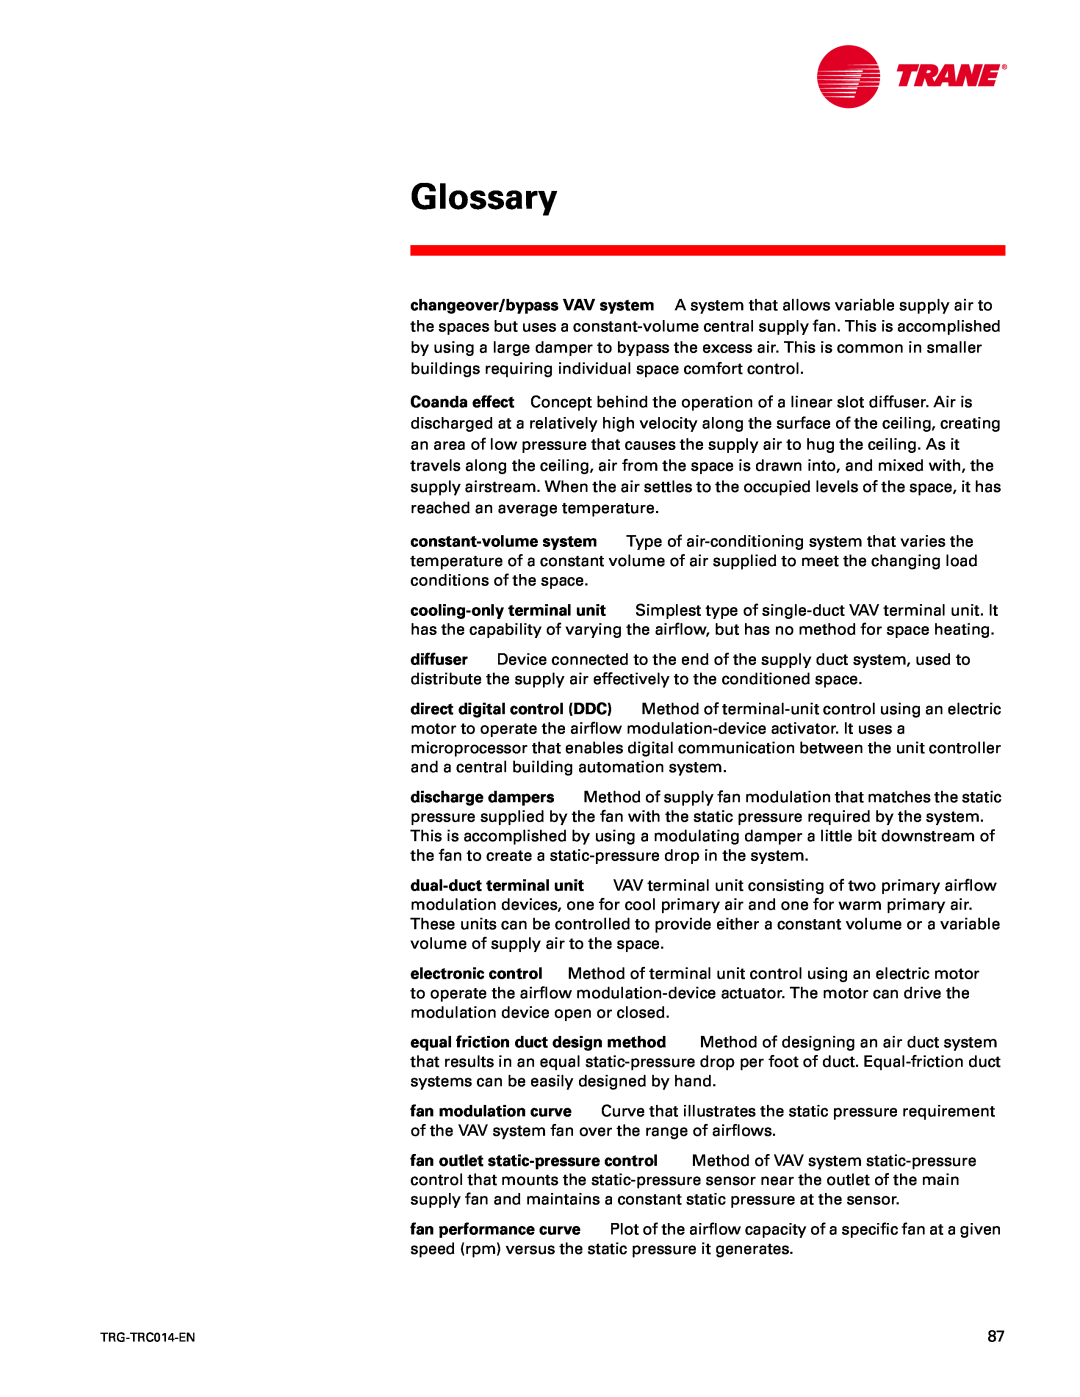 Trane TRG-TRC014-EN manual Glossary 